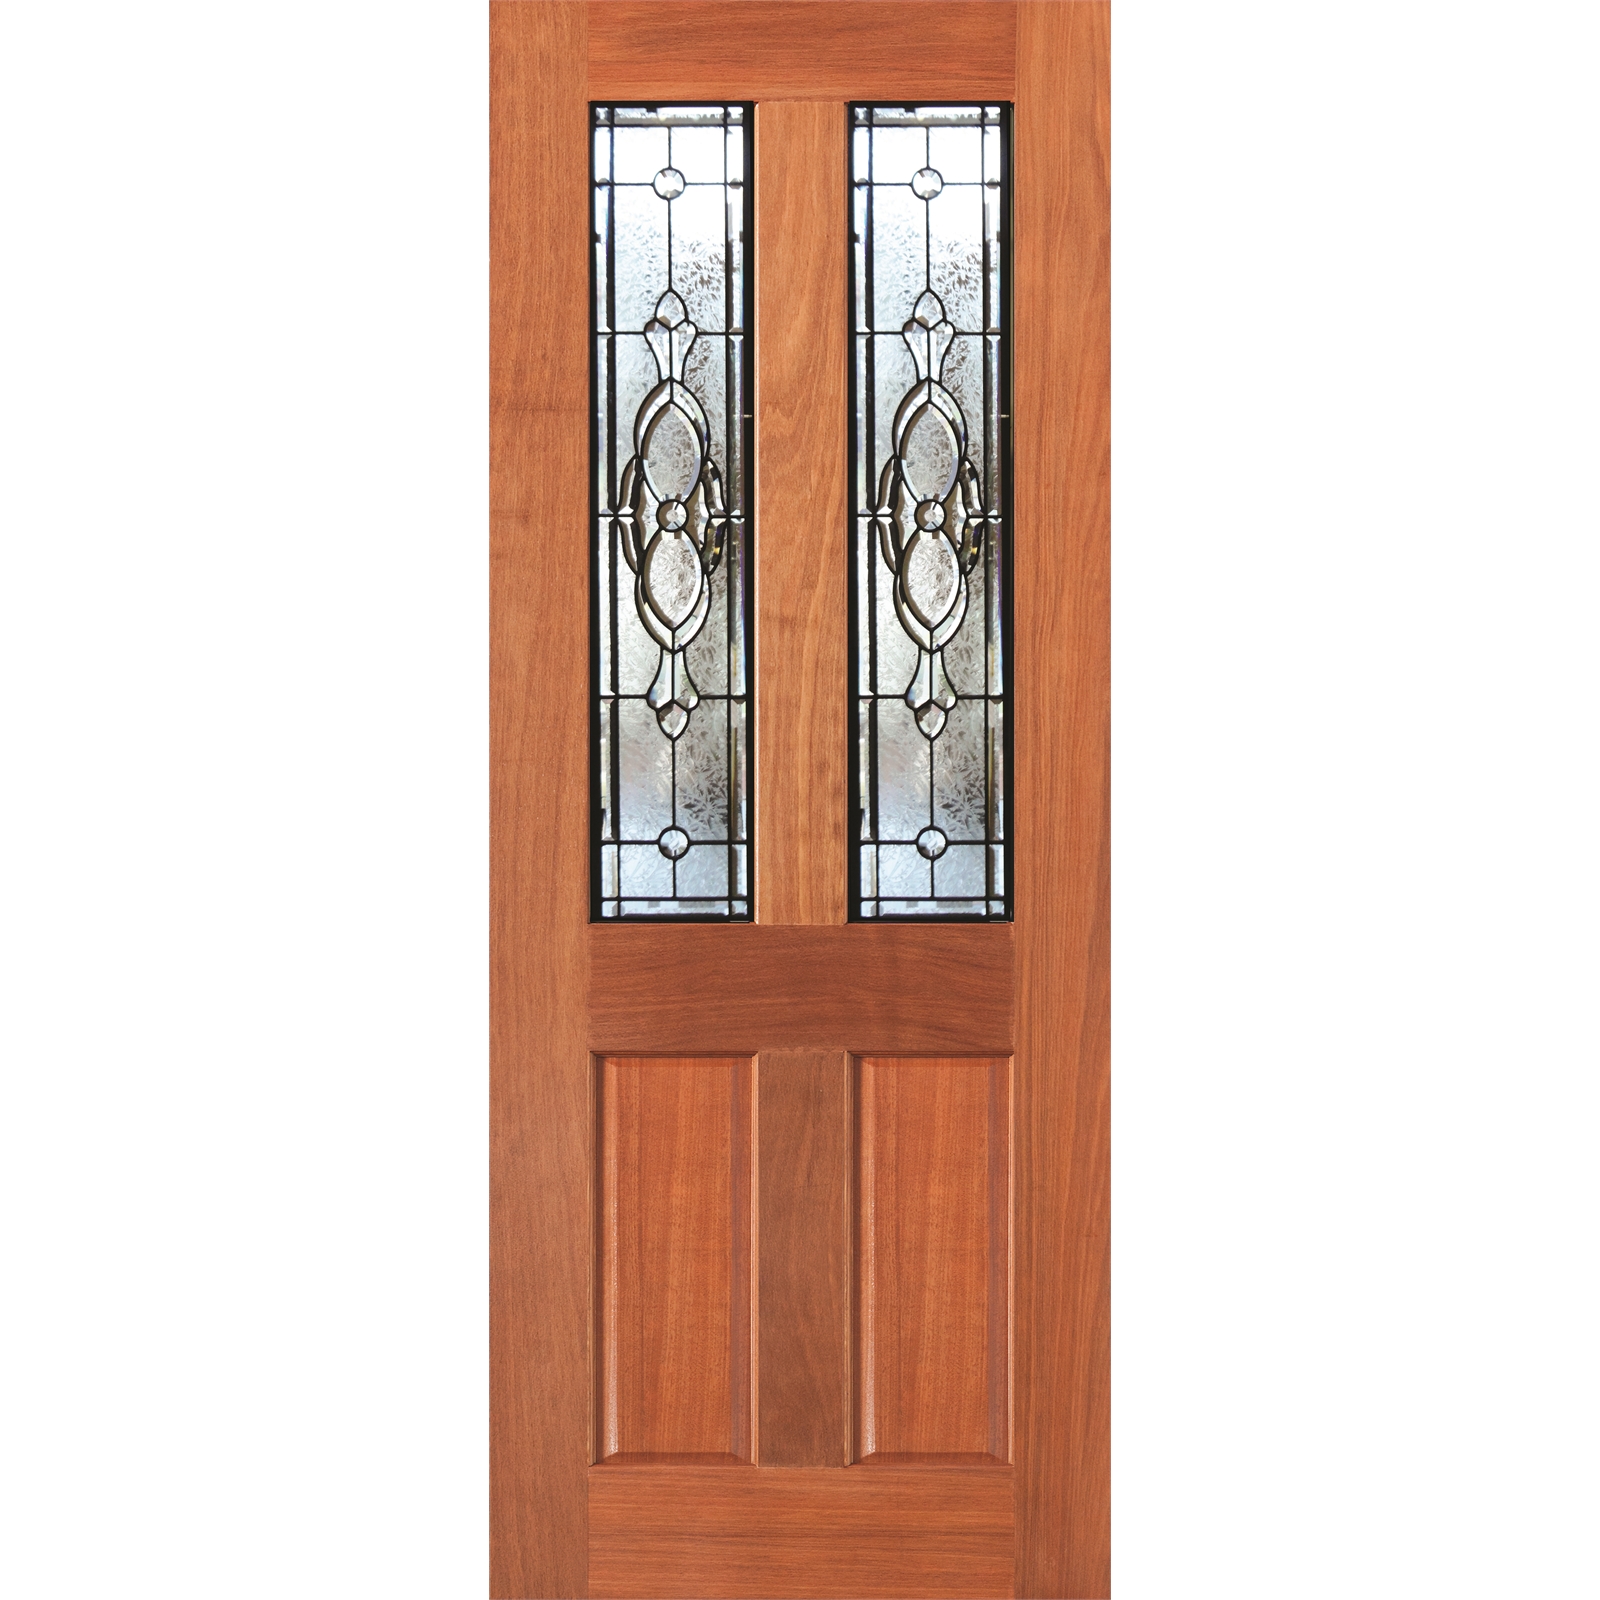 Woodcraft Doors 2040 x 820 x 40mm Bevelled Jewel Cass Entrance Door